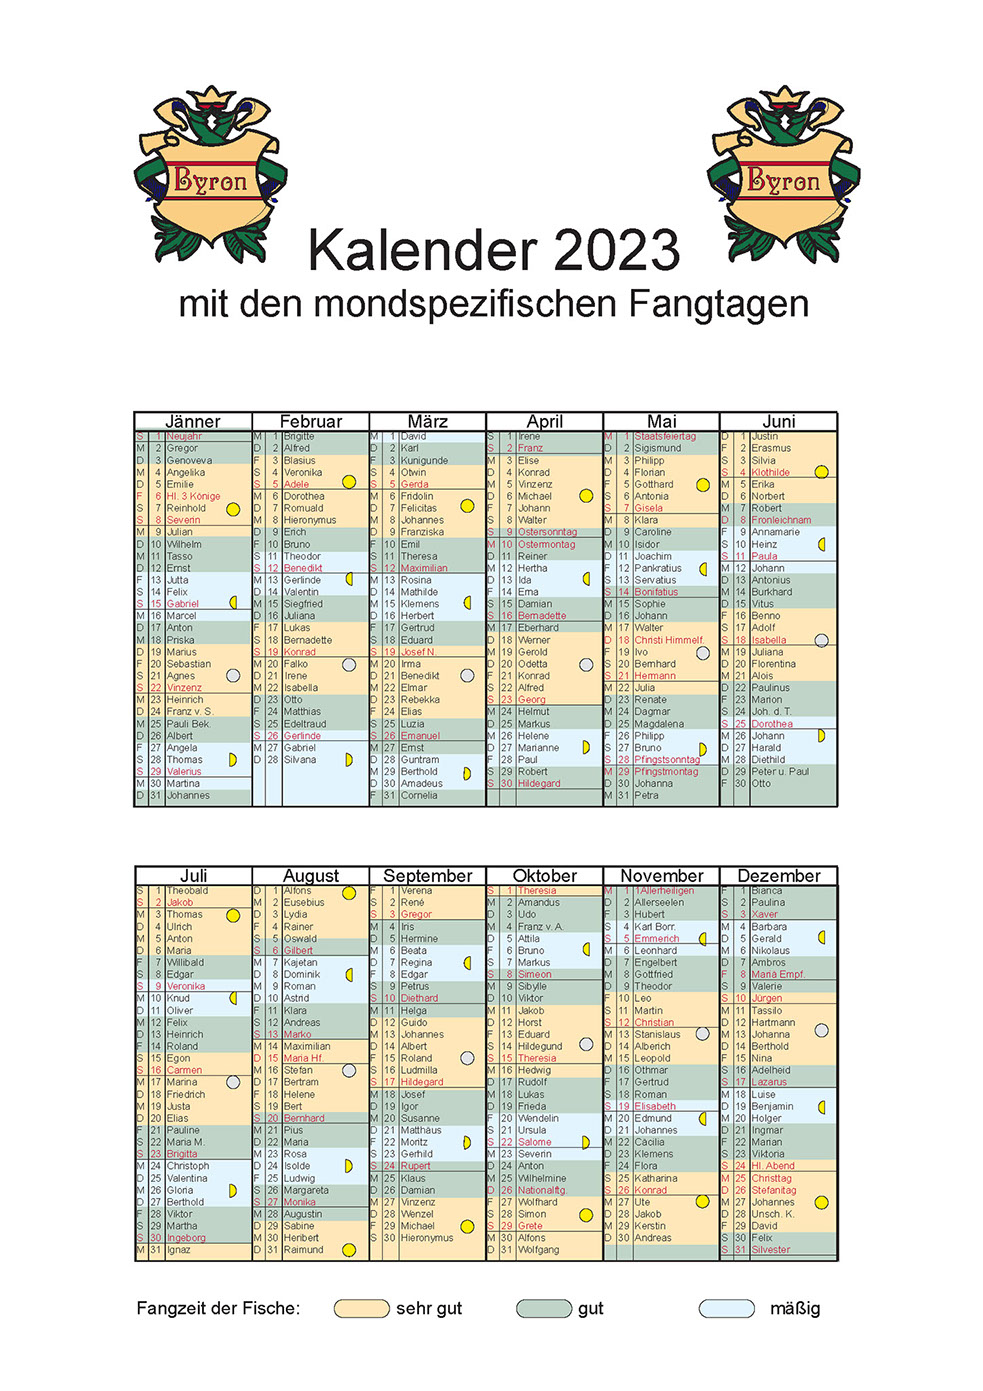 Kalender 2016 mit den mondspezifichen Fangtagen